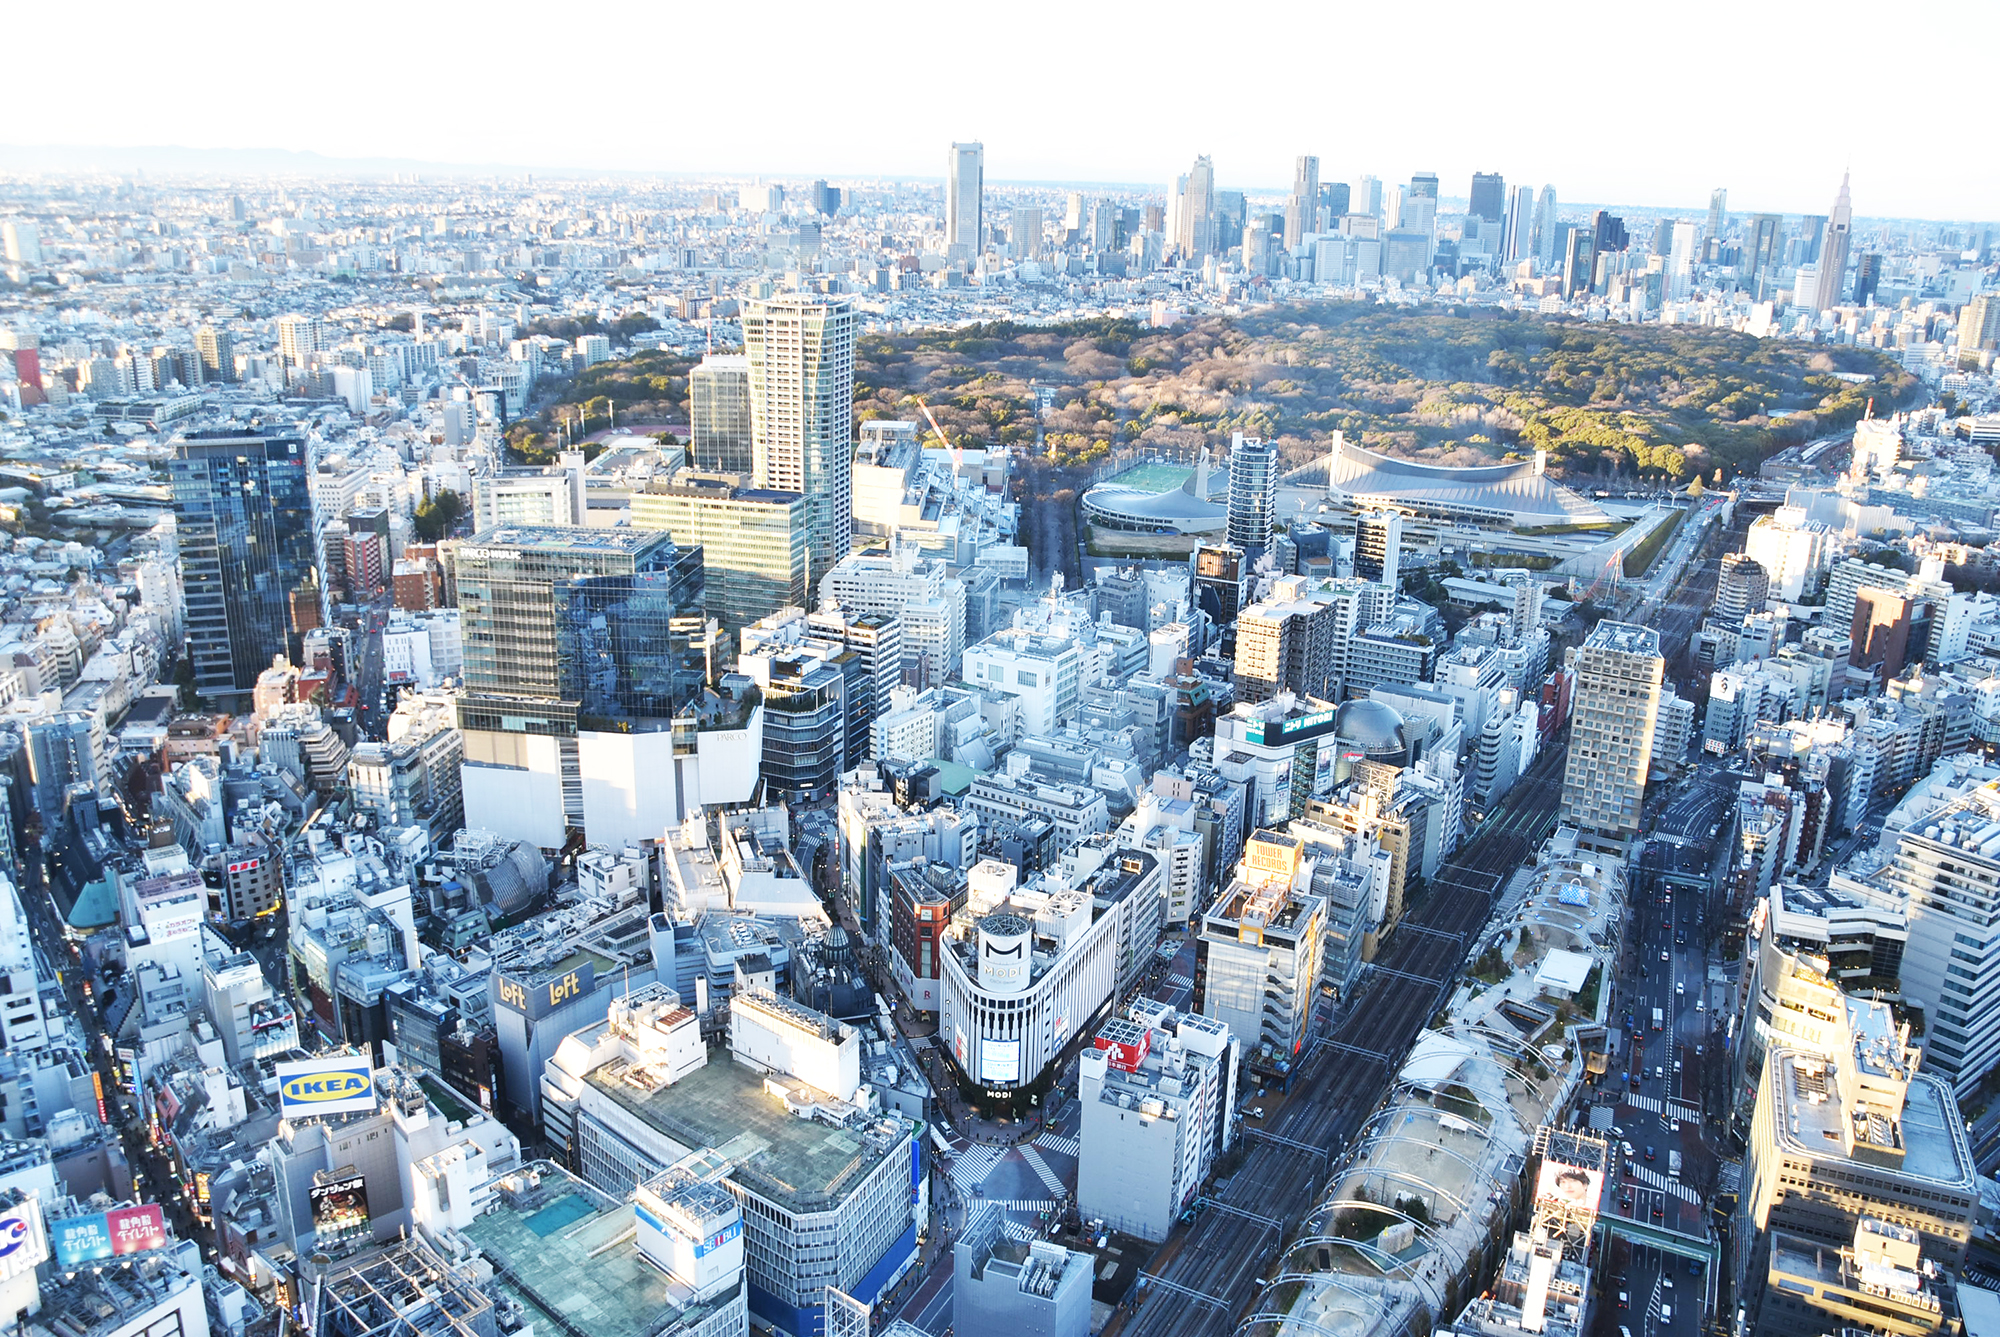 「SKY GALLERY」から見た渋谷の風景